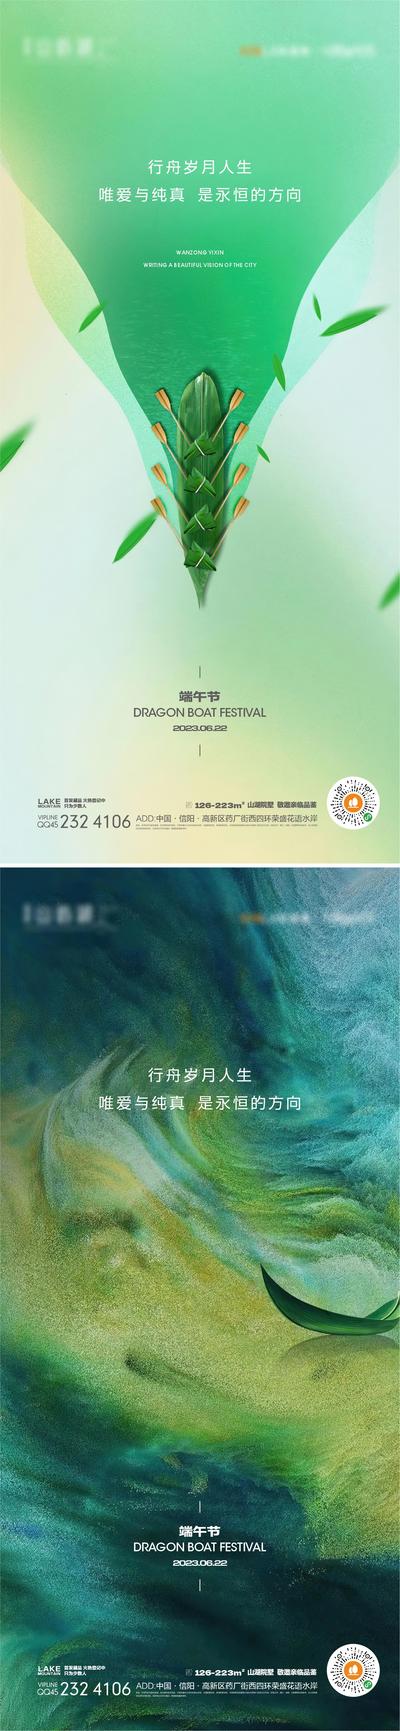 南门网 海报 中国传统节日 房地产 端午节 龙舟 粽叶 鎏光 肌理 系列